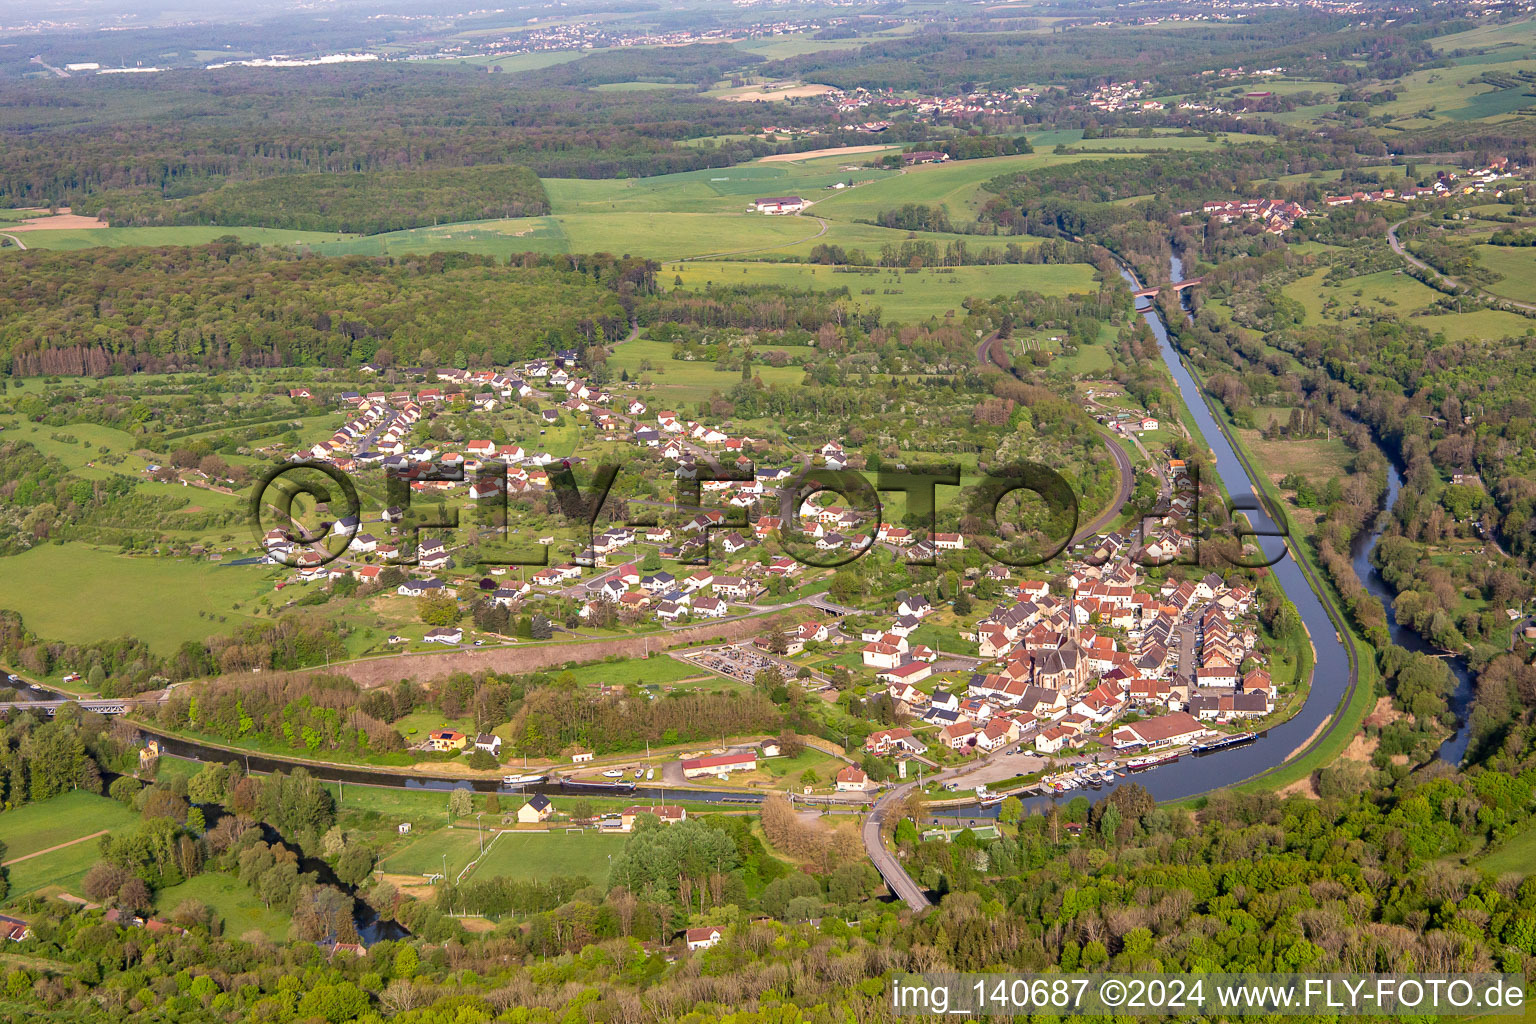 Saar loop in Wittring in the state Moselle, France